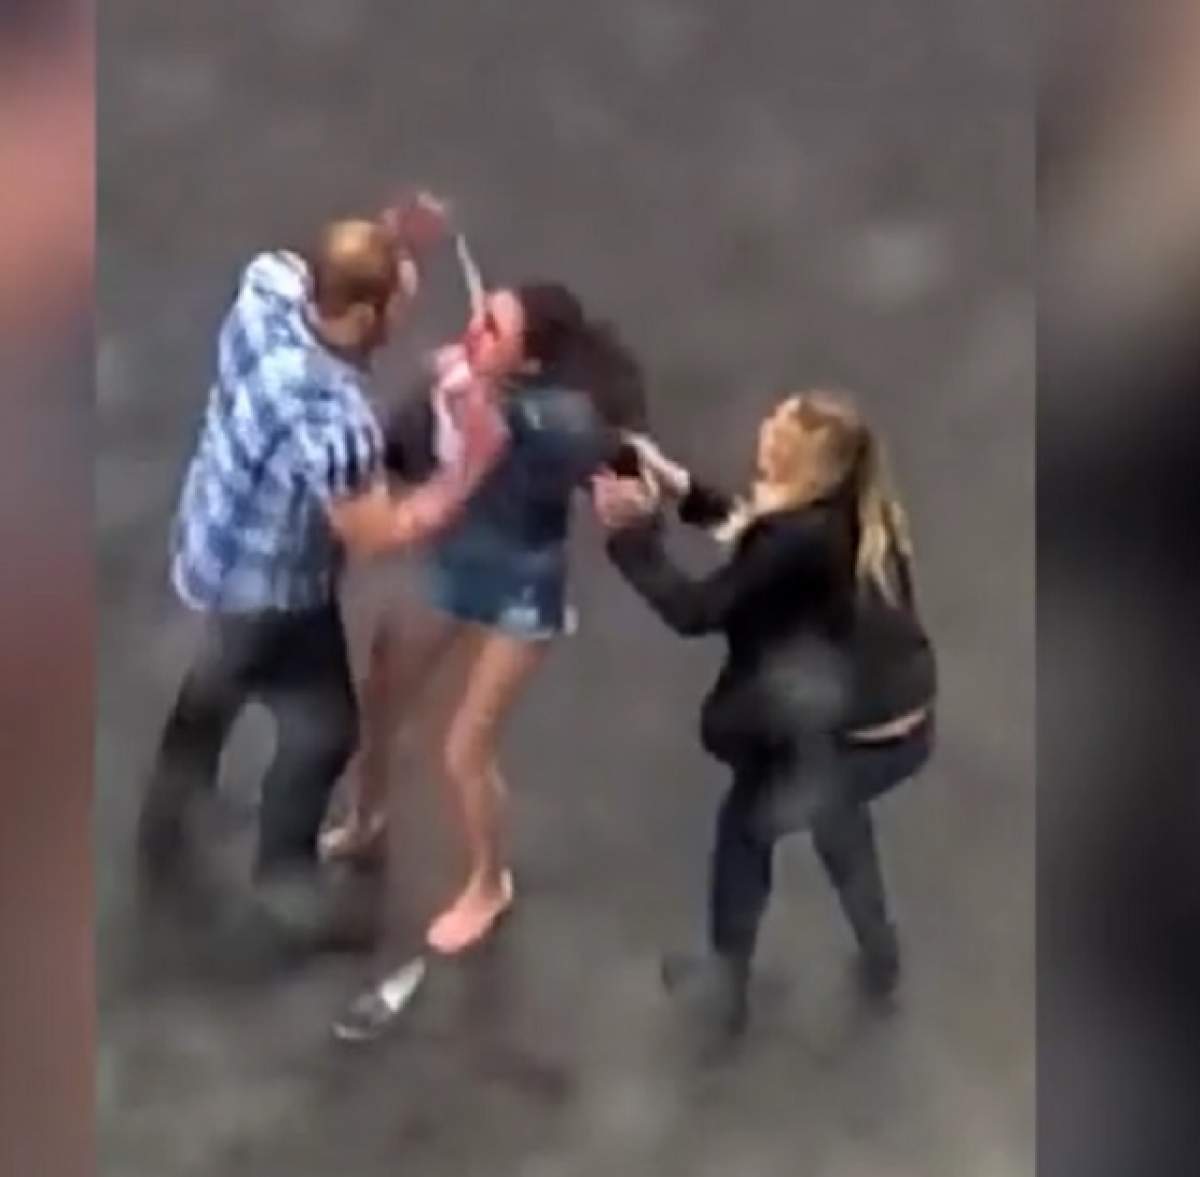 VIDEO / Și-a bătut iubita crunt, dar nu a știut că este filmat! Imagini cu un puternic impact emoțional!